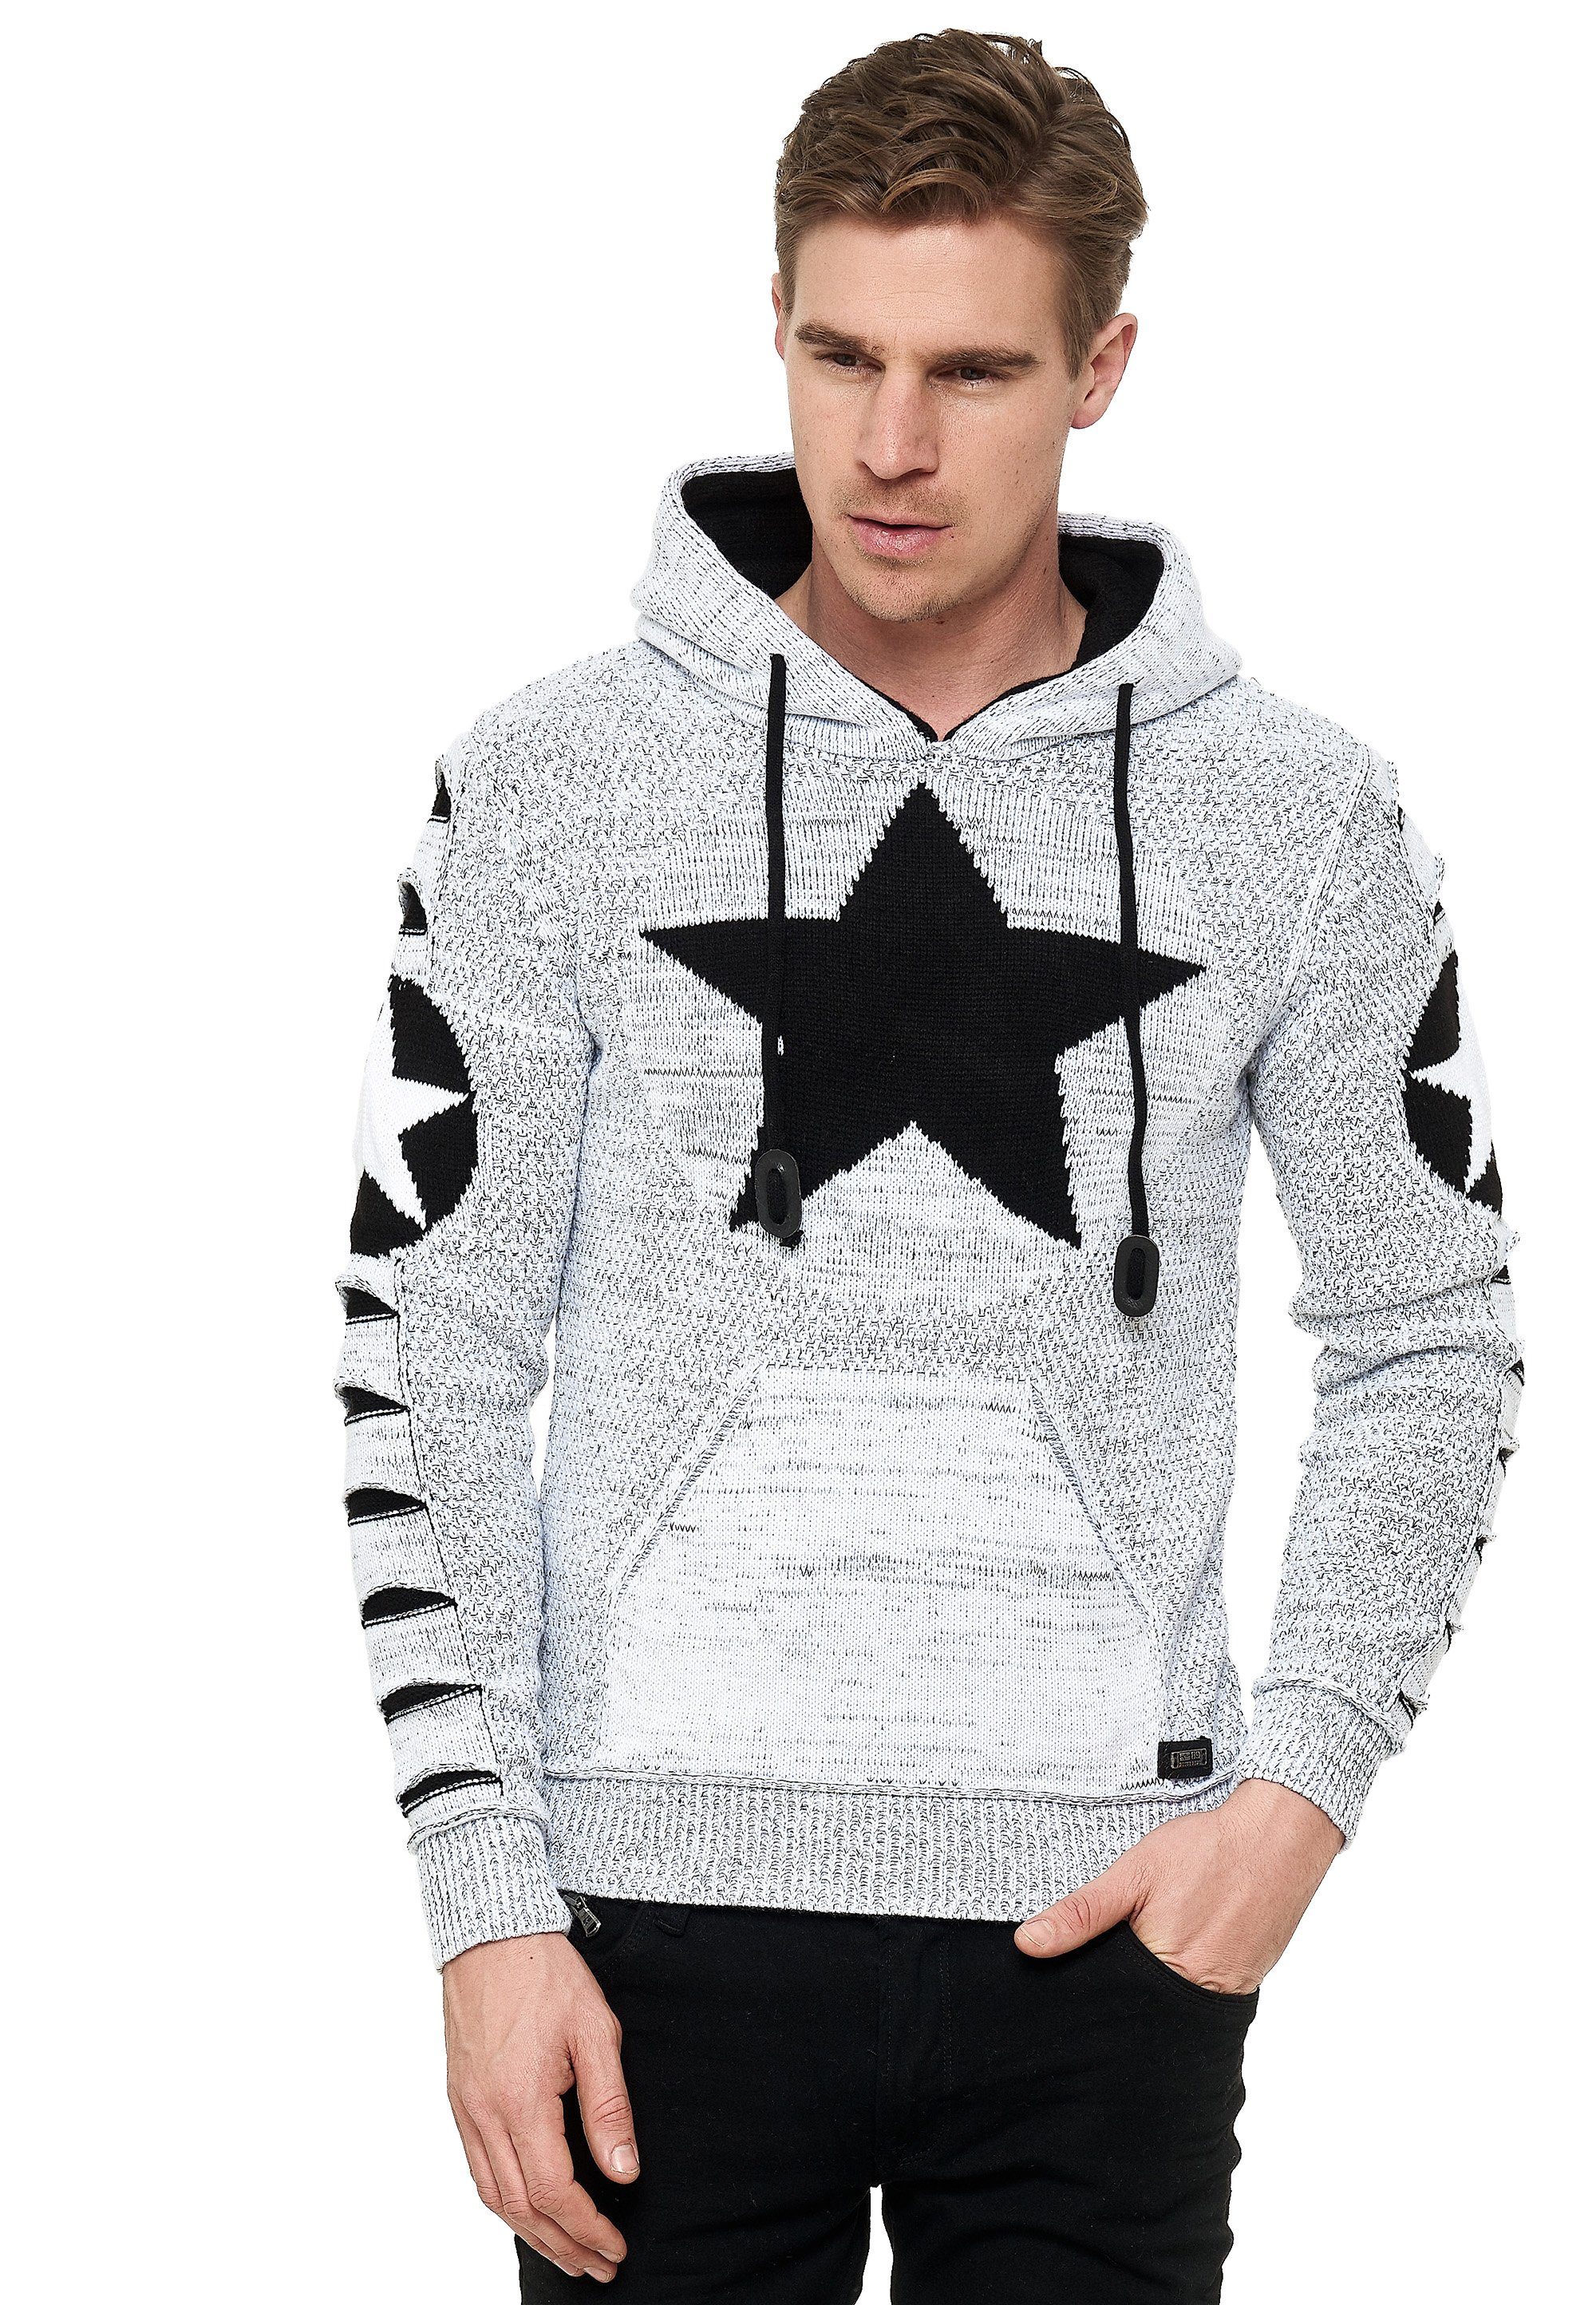 Rusty Neal Kapuzensweatshirt mit großem Stern-Design weiß-schwarz